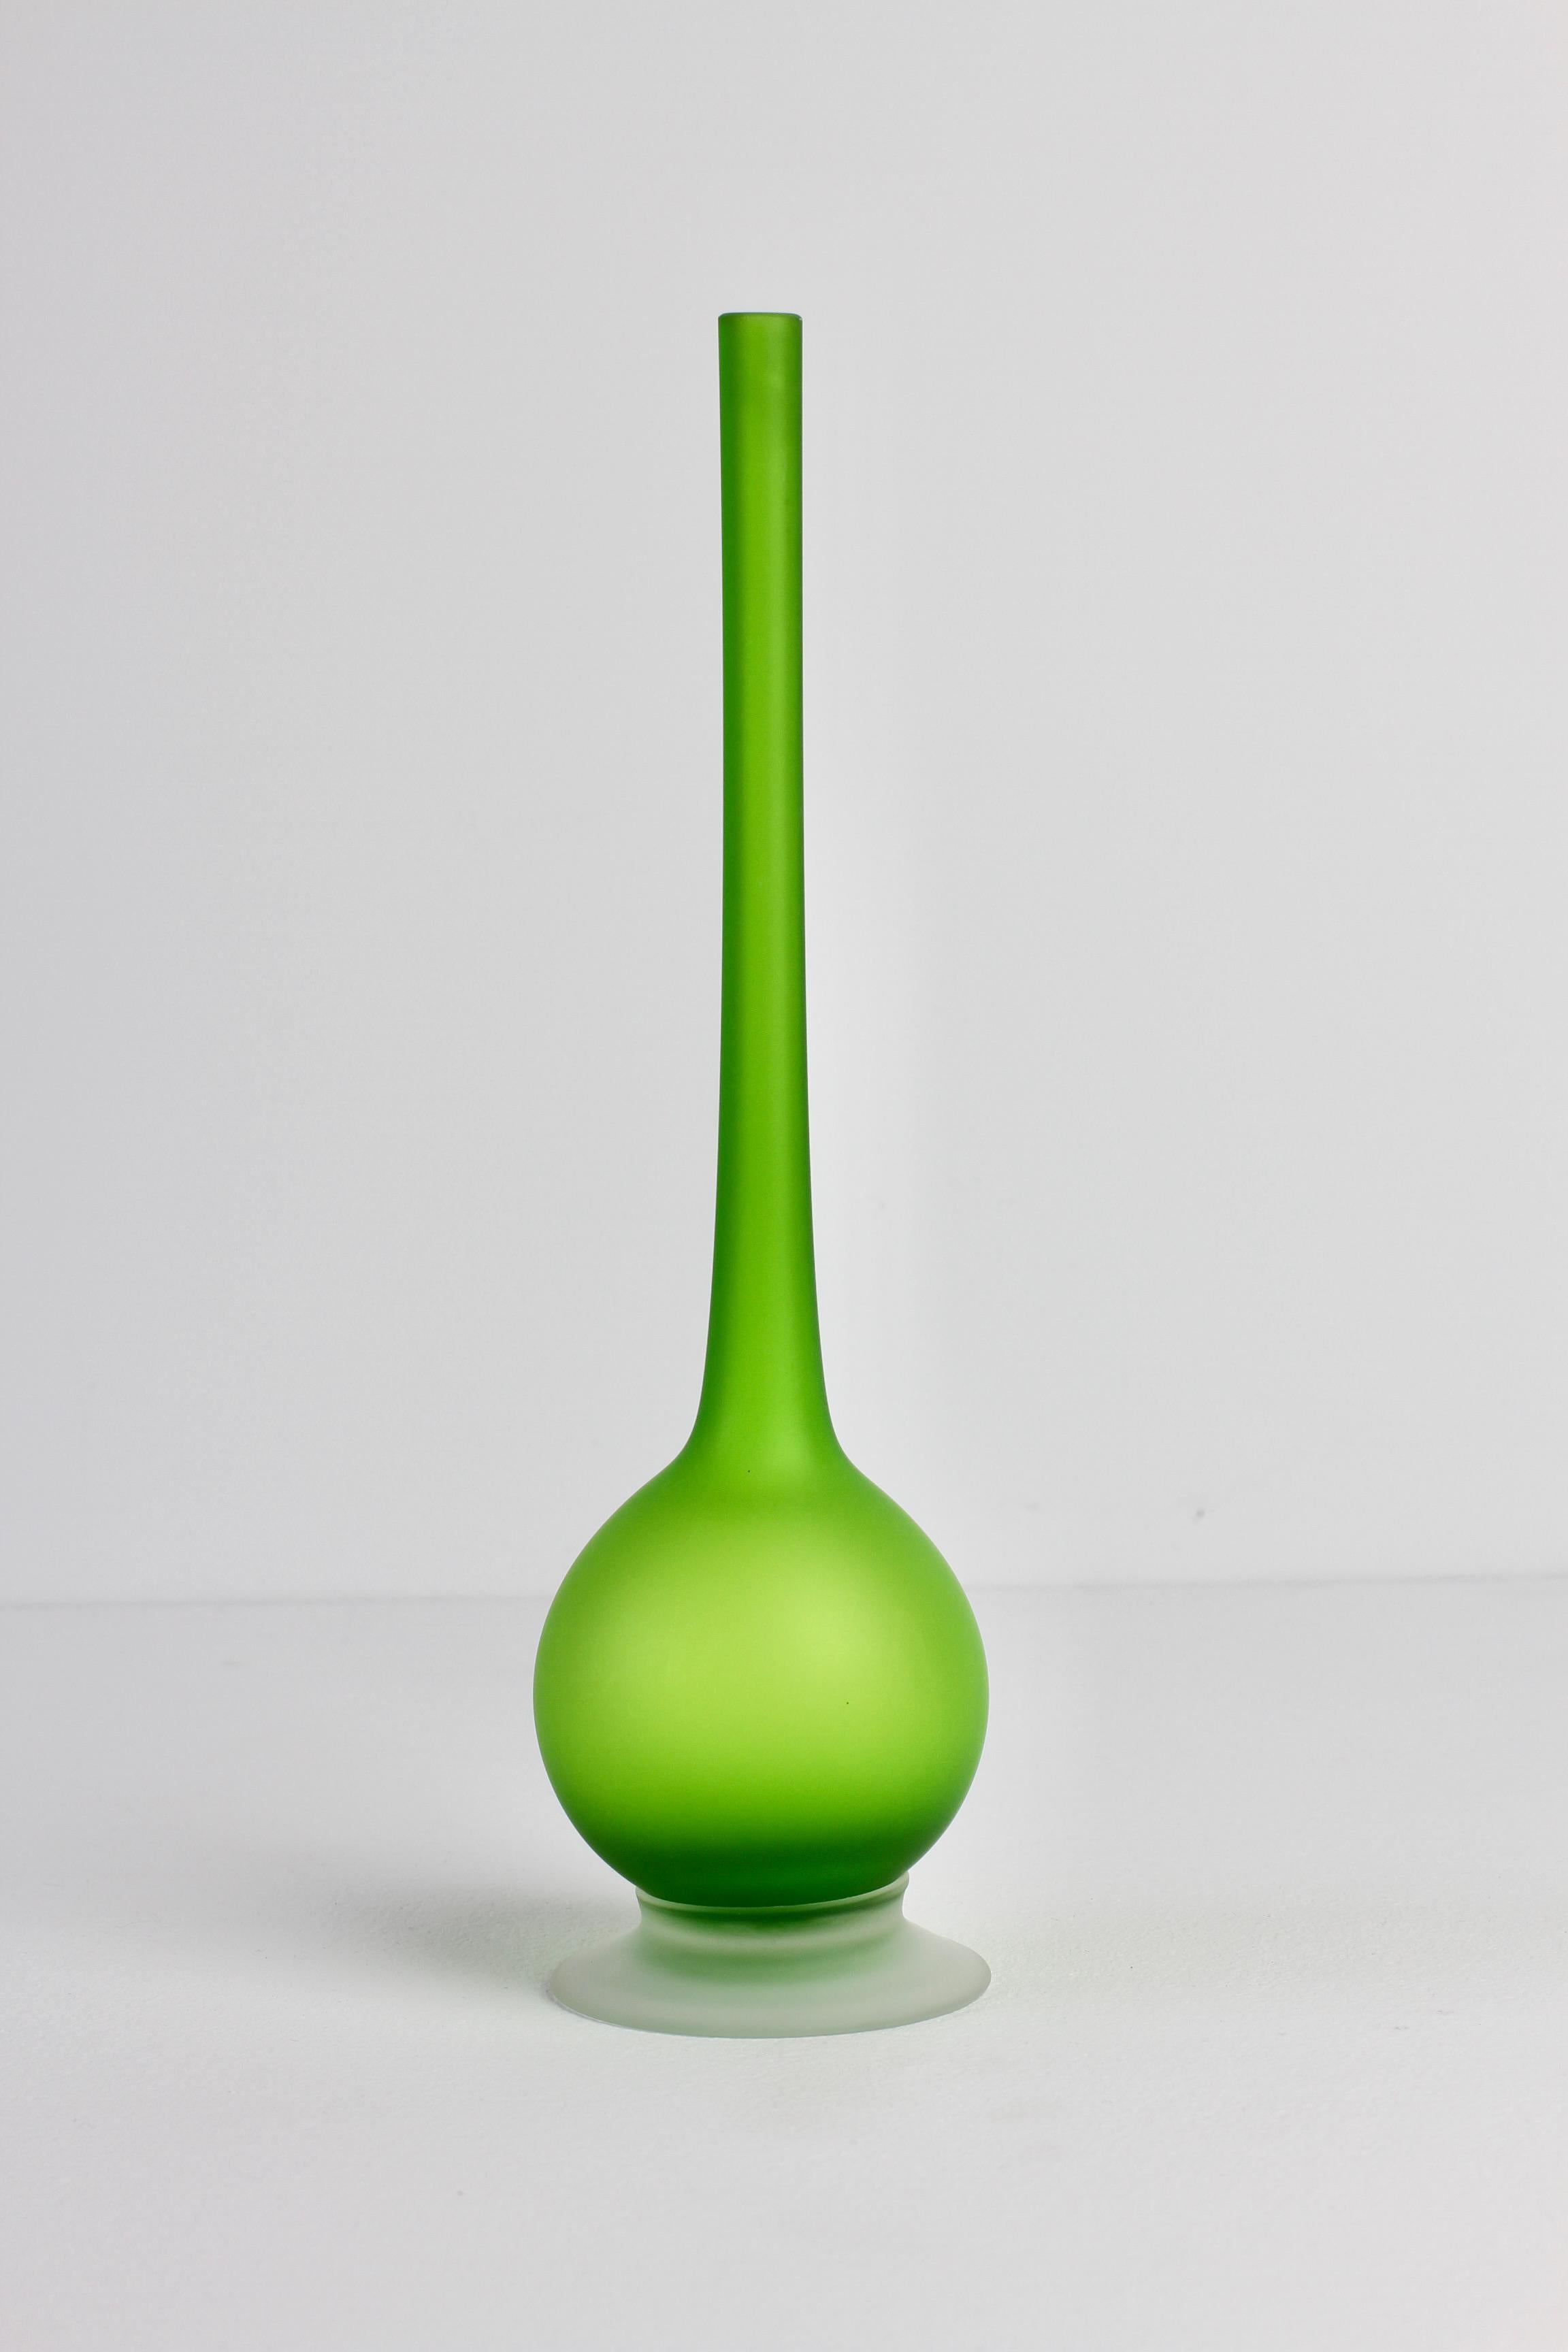 Vases à col crayon en verre de Murano de style moderne du milieu du siècle dernier, de couleur vert gelée / satin coloré, par Carlo Moretti (1934-2008), vers 1970.

Un design absolument audacieux et pourtant élégant, avec l'utilisation d'un vert